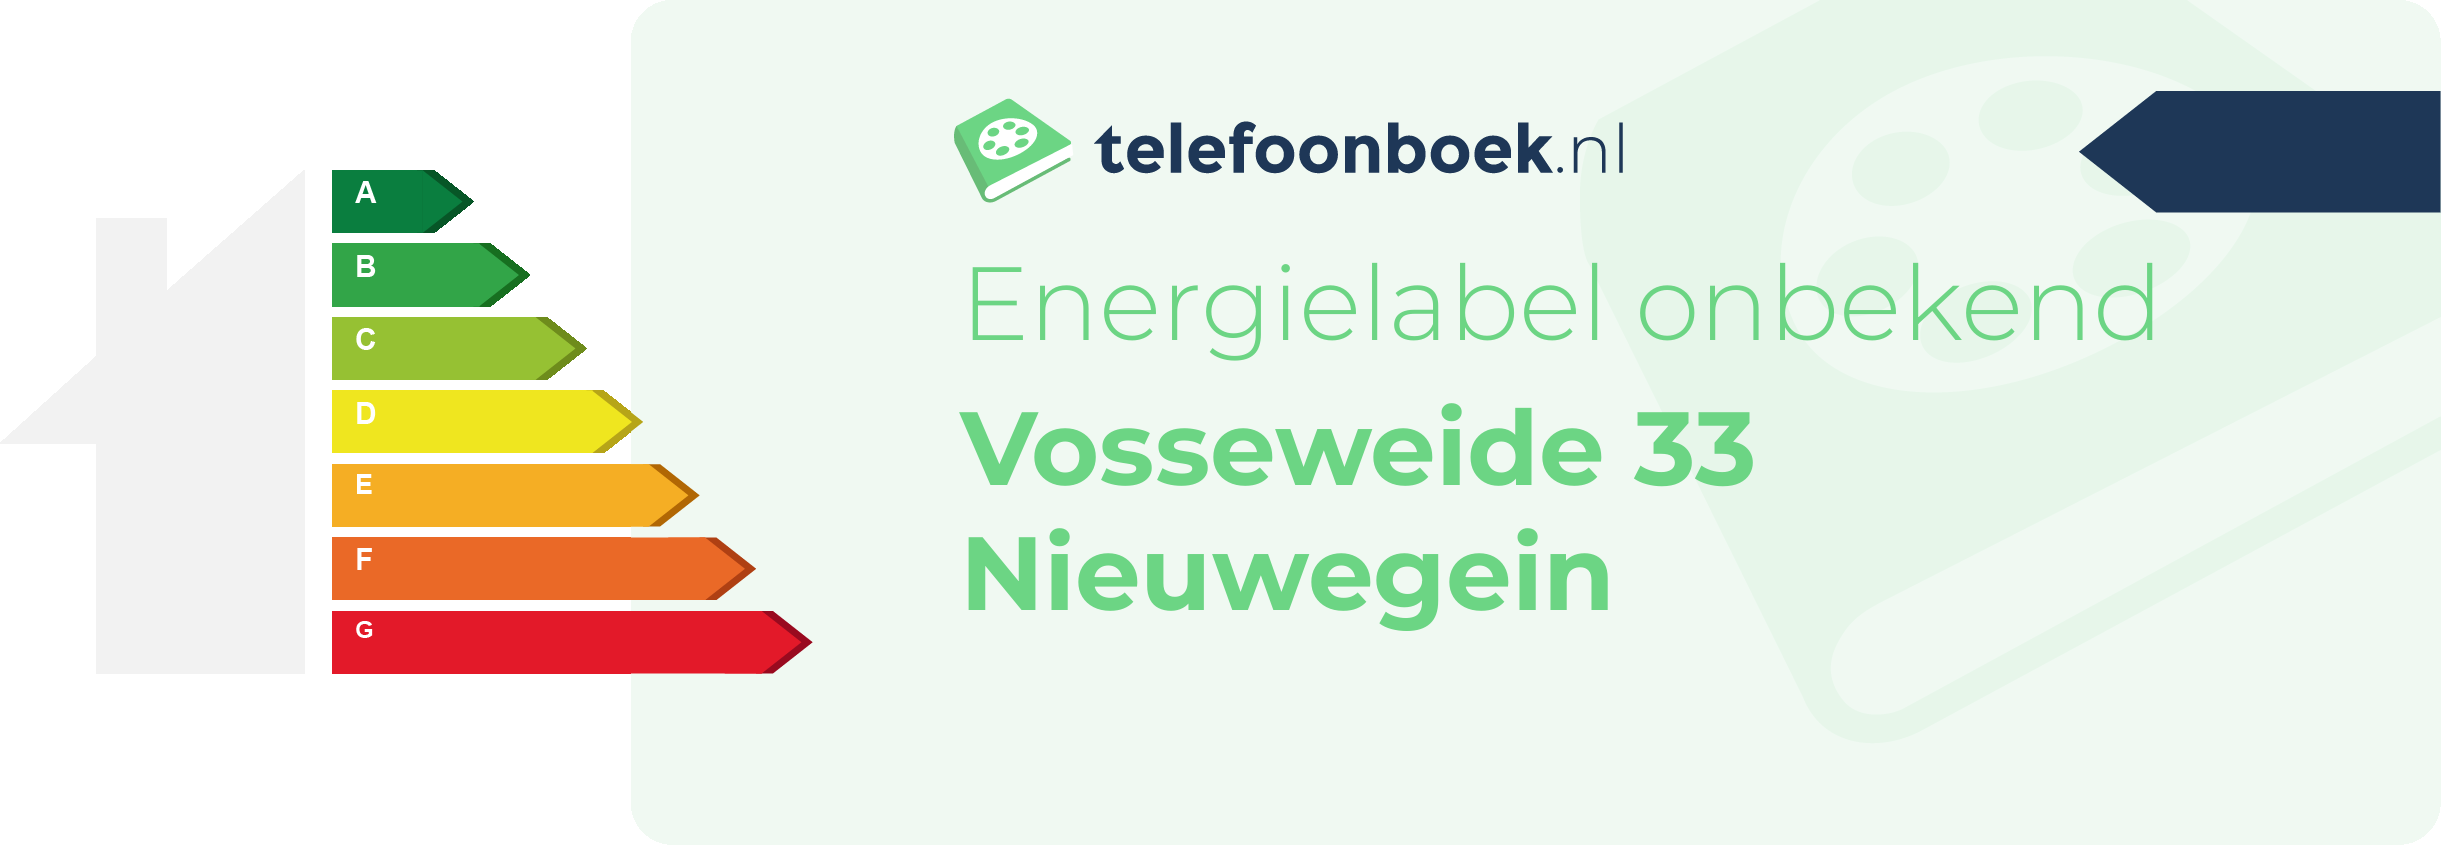 Energielabel Vosseweide 33 Nieuwegein